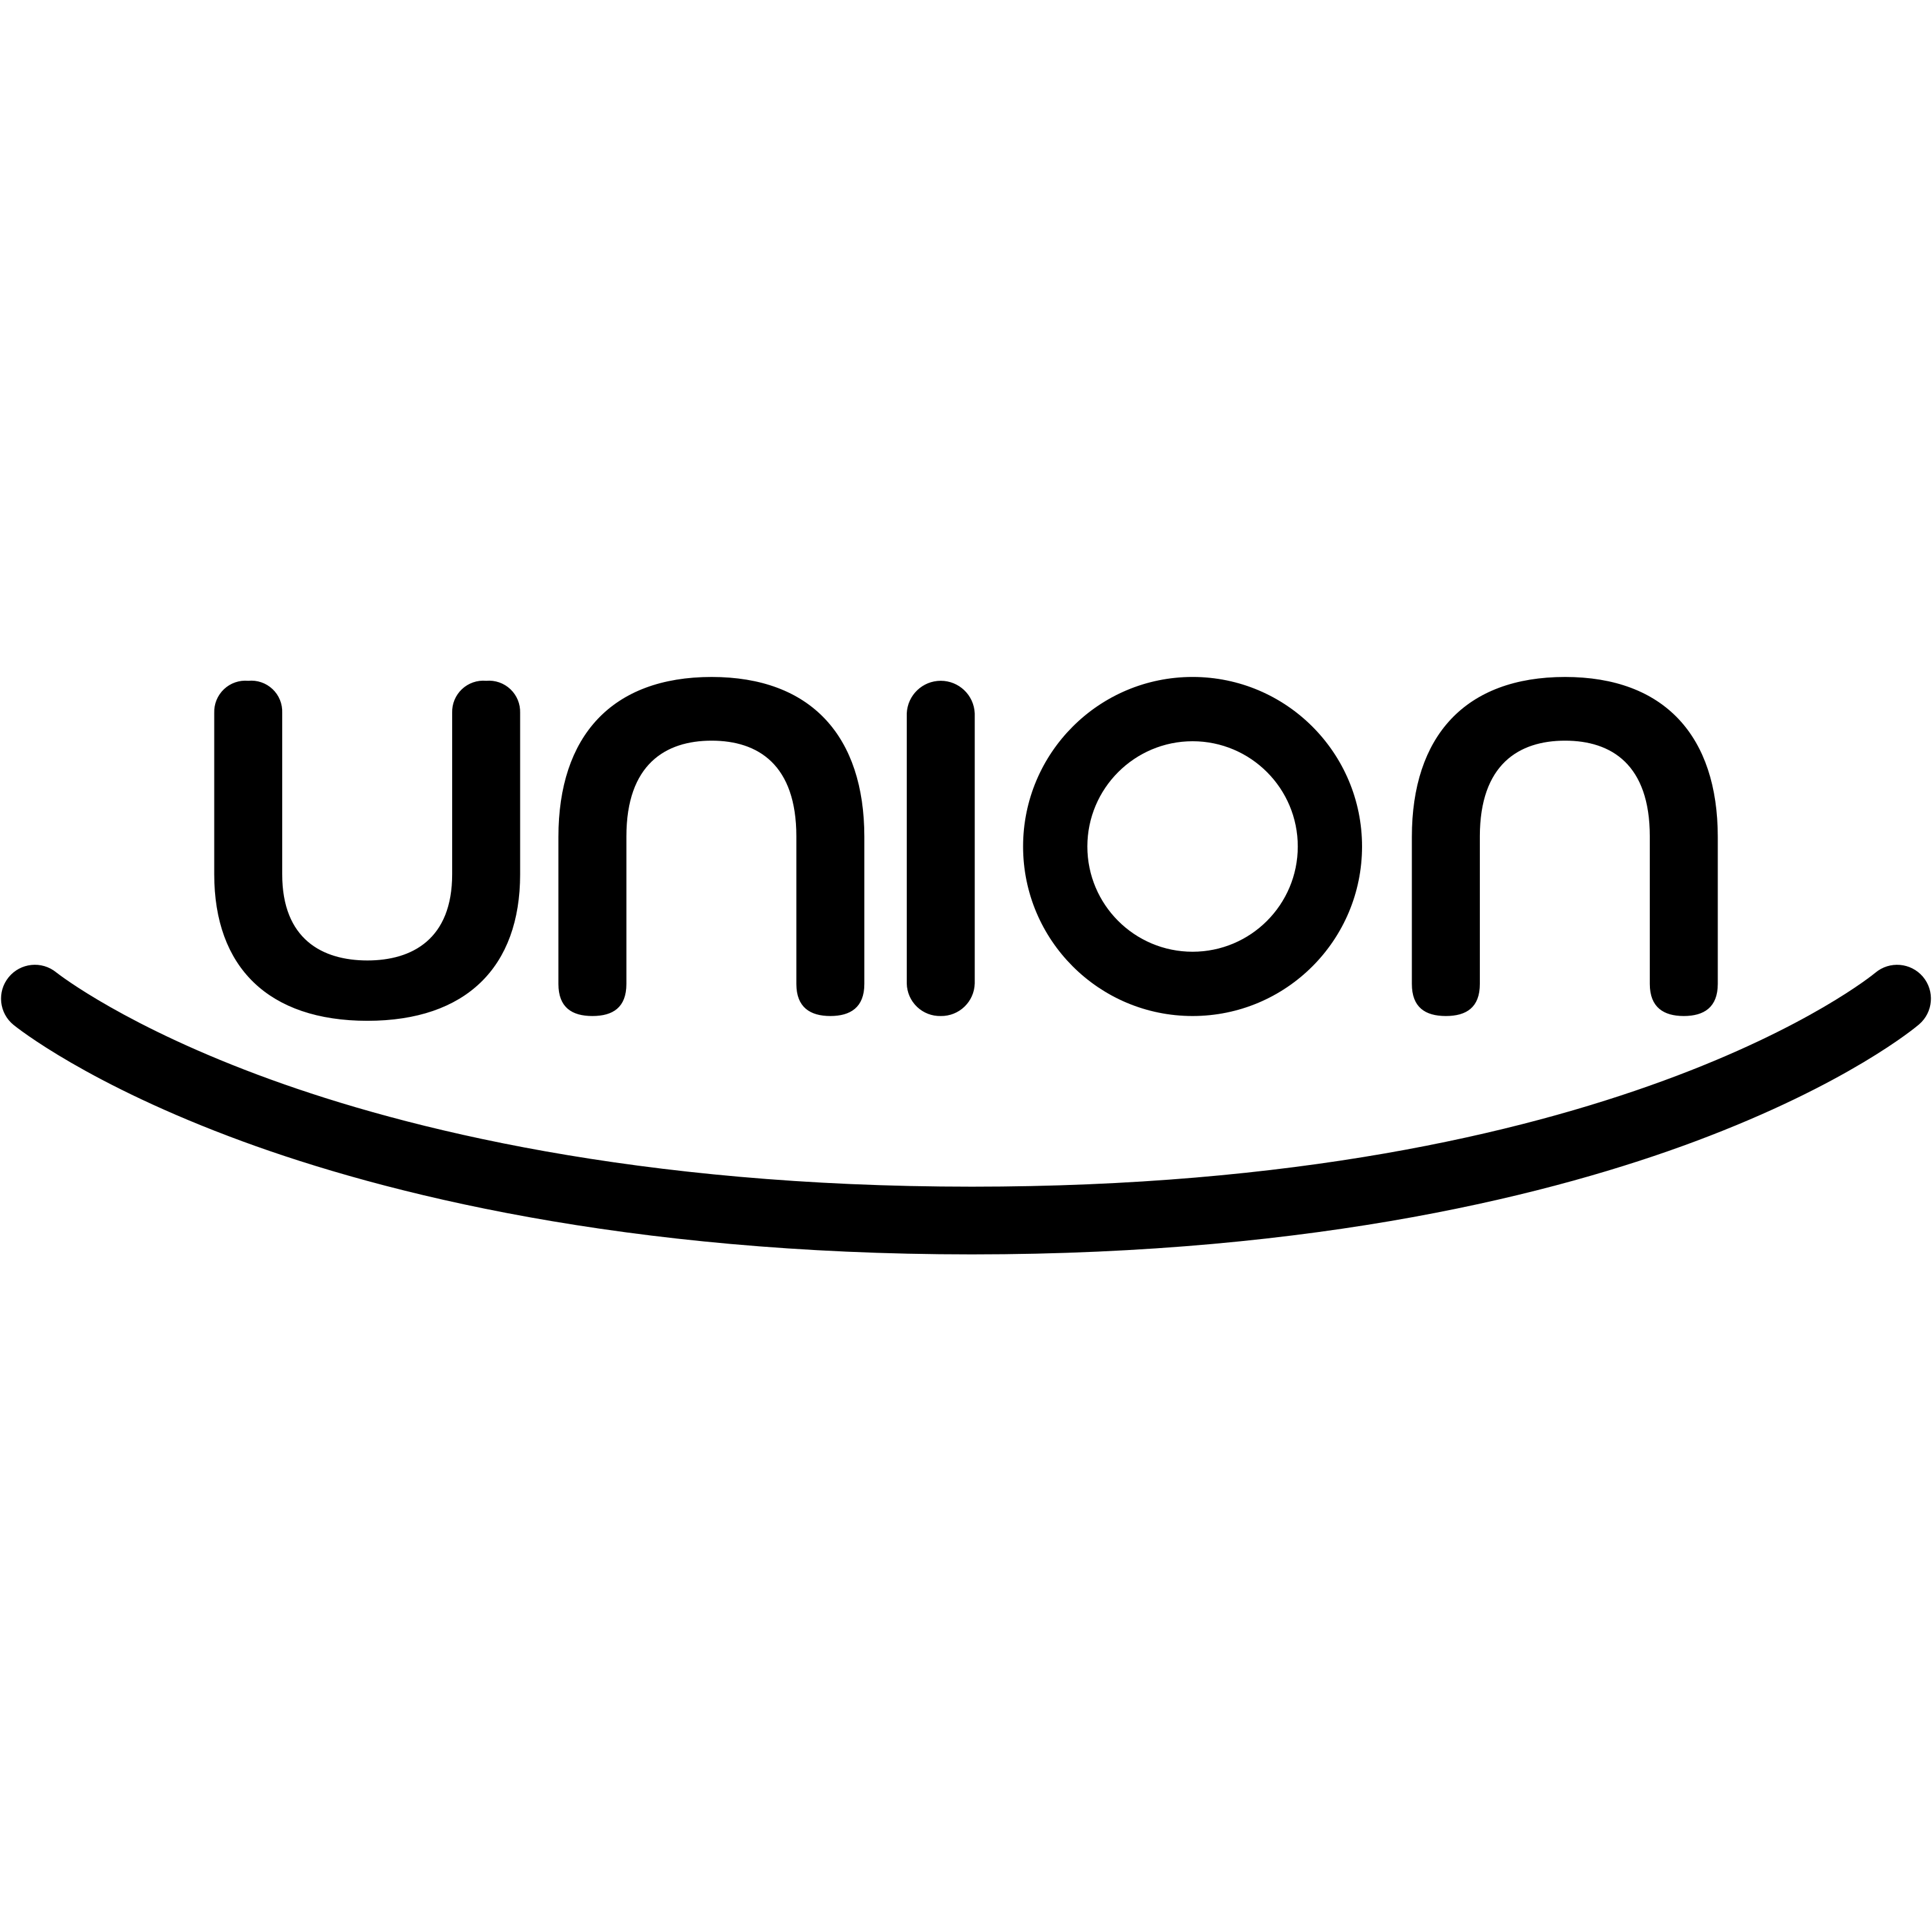 Union Logo Transparent Picture